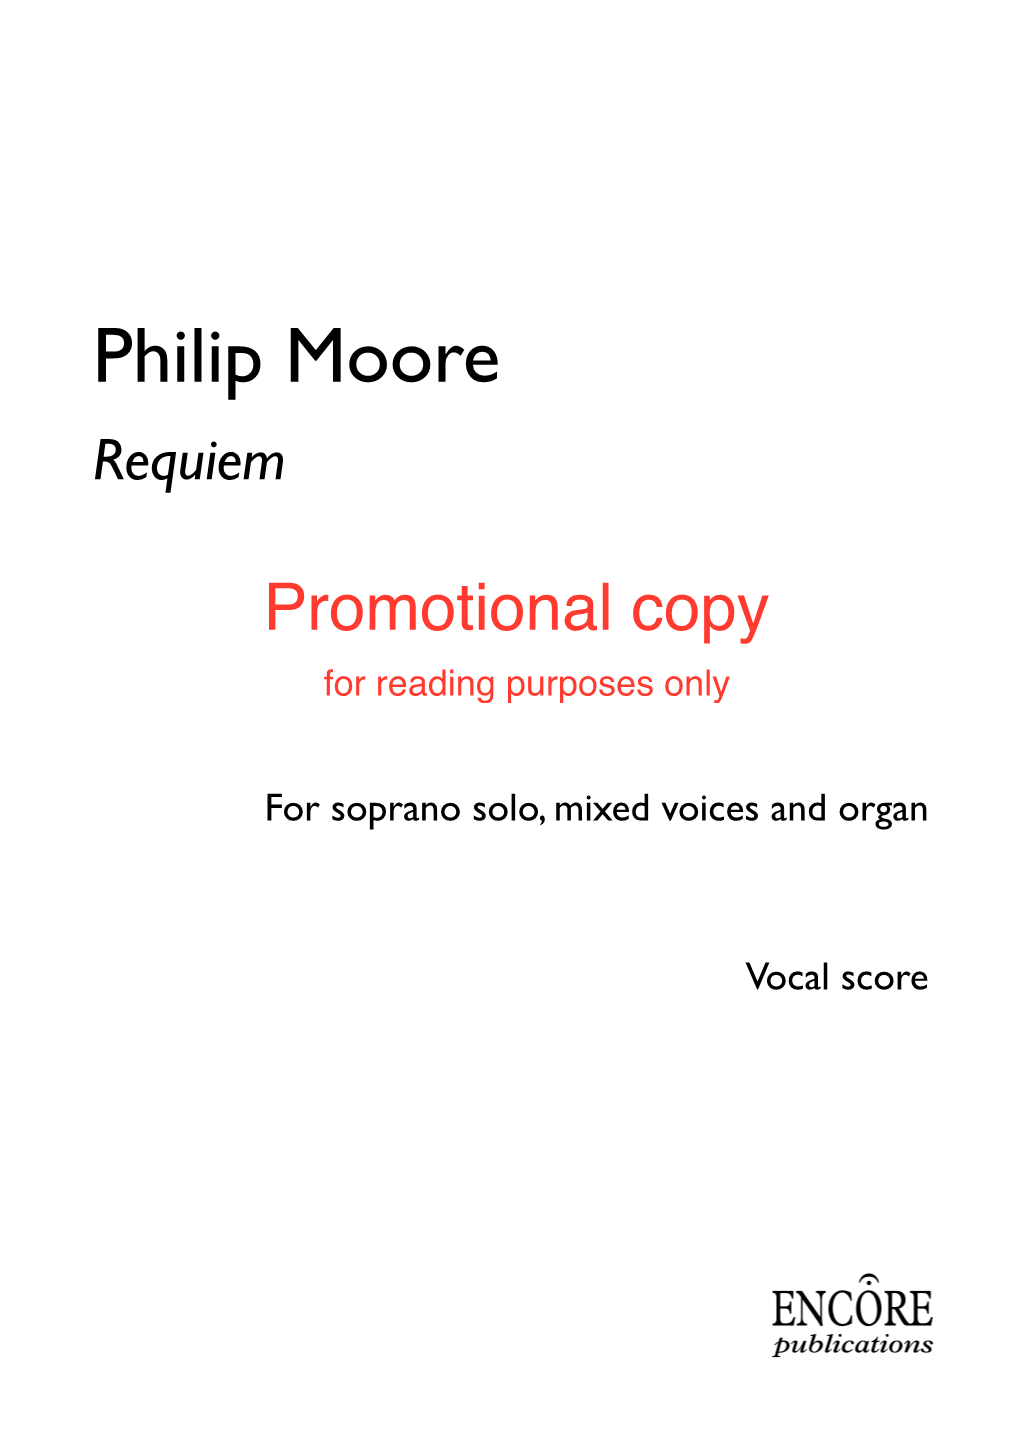 Philip Moore Requiem